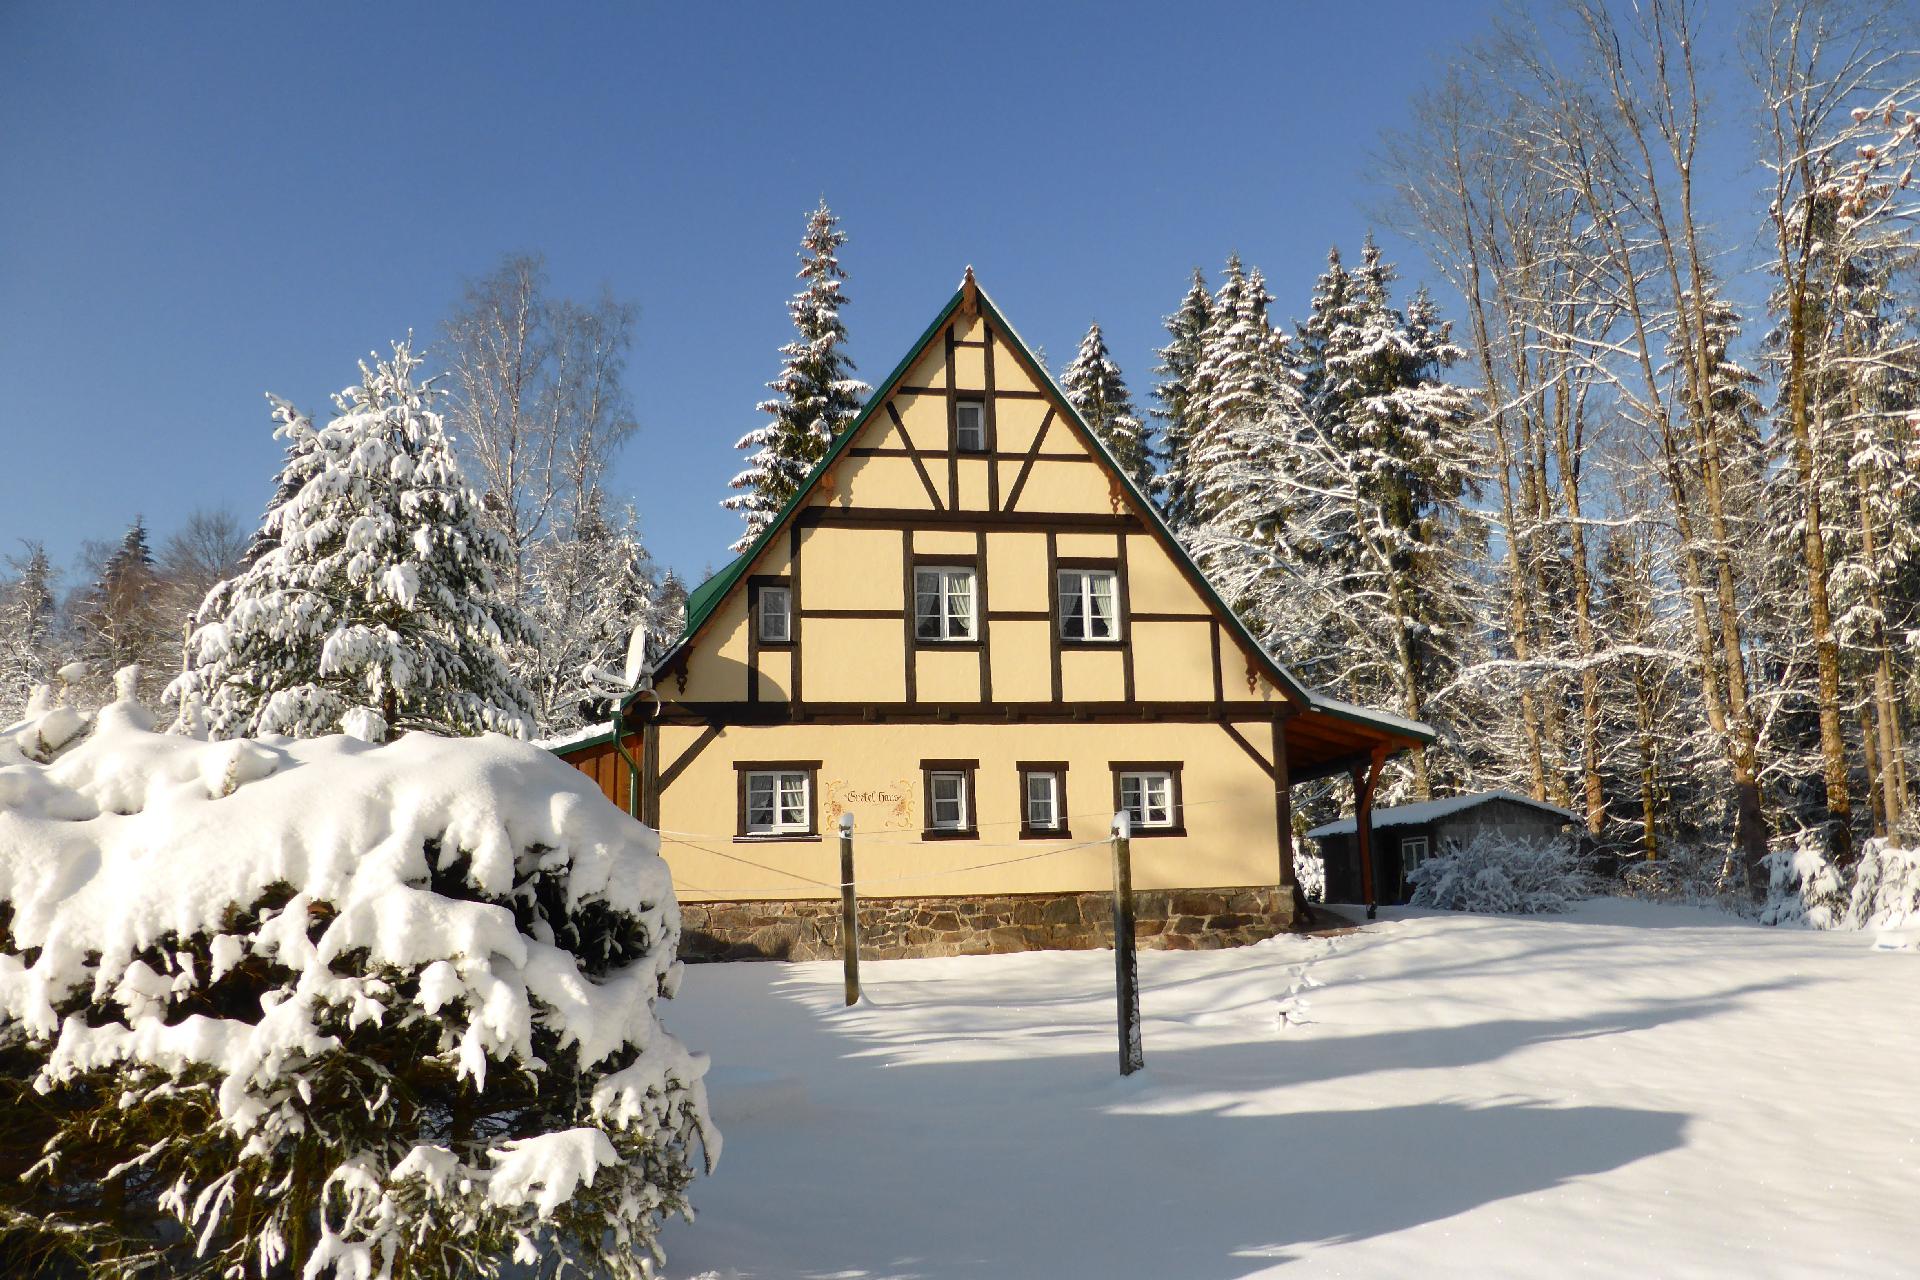 Ferienhaus in Grünheide mit Eigenem Garten   Erzgebirge